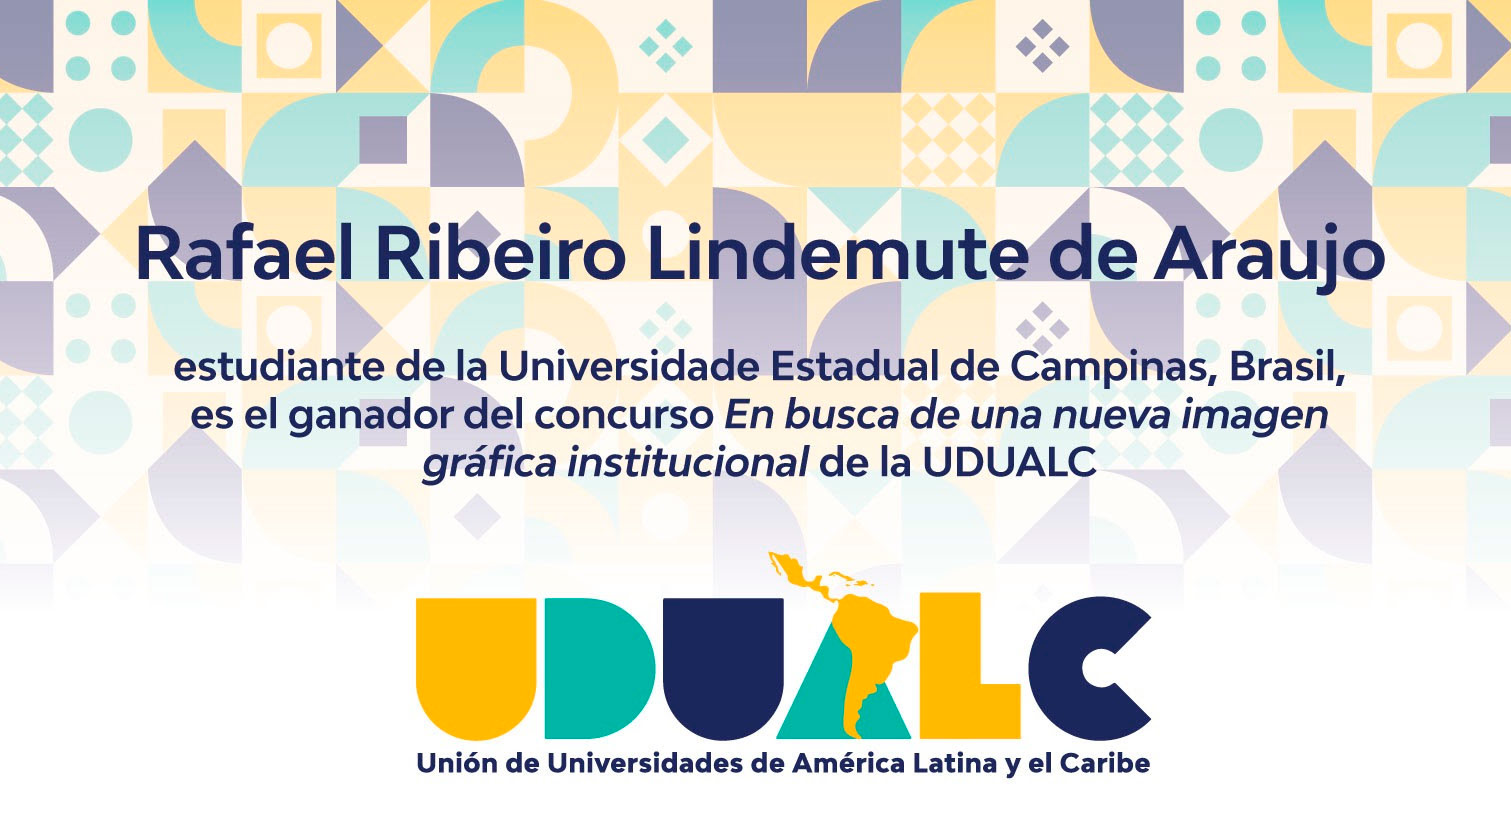 Diploma oferecido pela Udualc ao vencedor do concurso para identidade visual